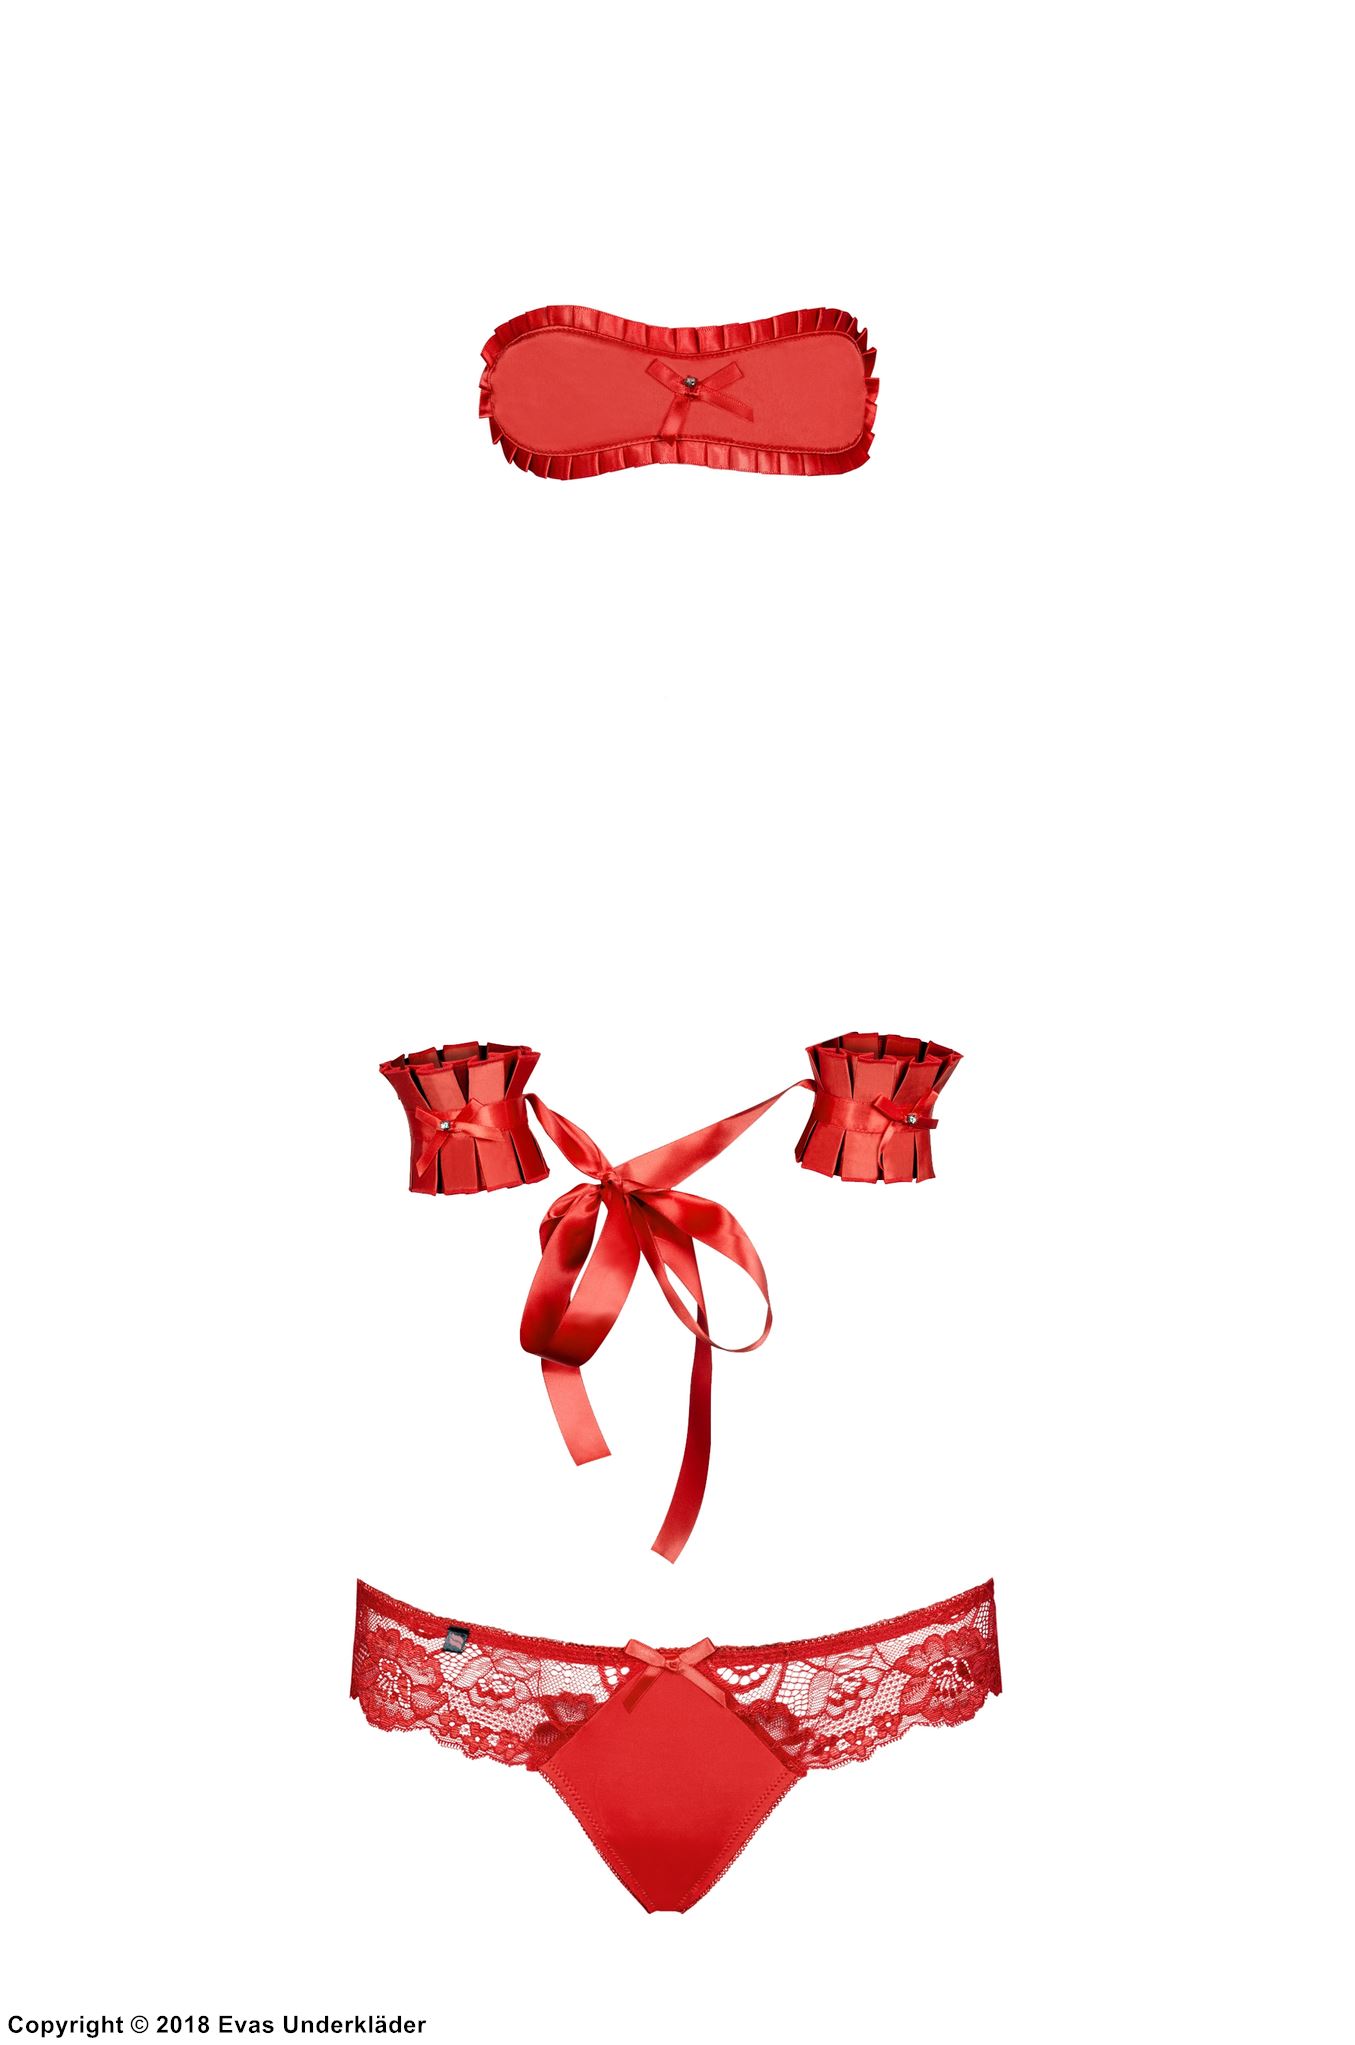 Seductive lingerie set, satin bow, lace embroidery